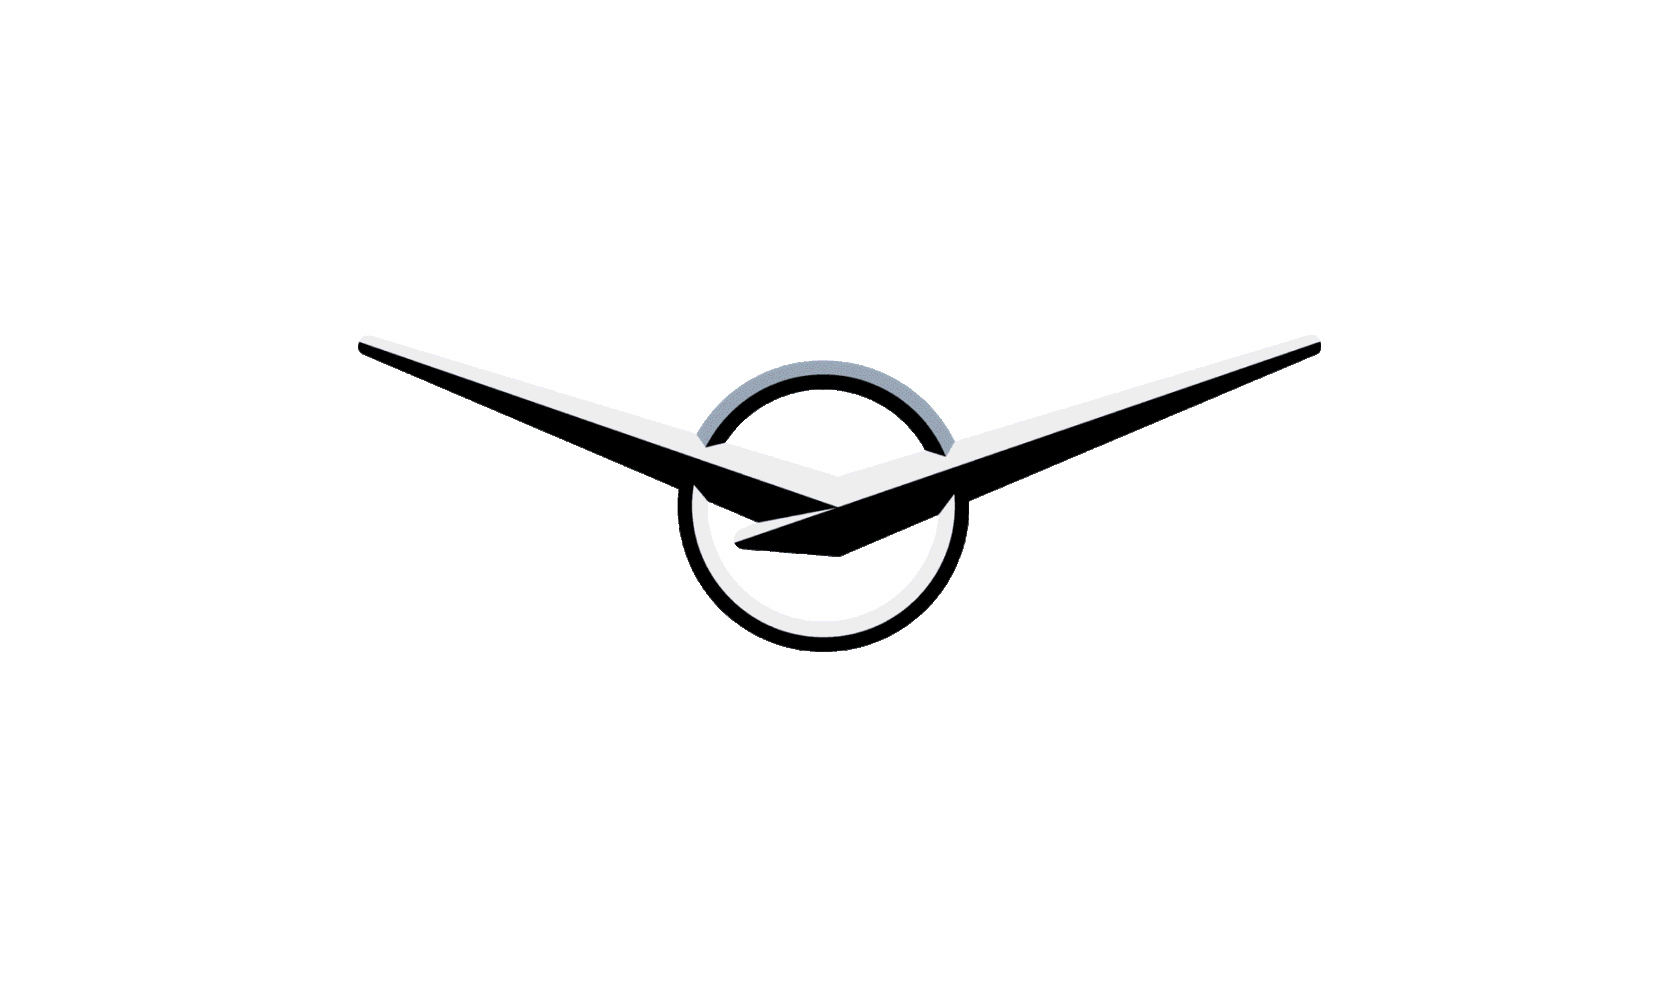 Что символизирует эмблема уаз. Значок марки УАЗ. Ульяновский автомобильный завод логотип. Значок автомобиля УАЗ. Значок УАЗ вектор.